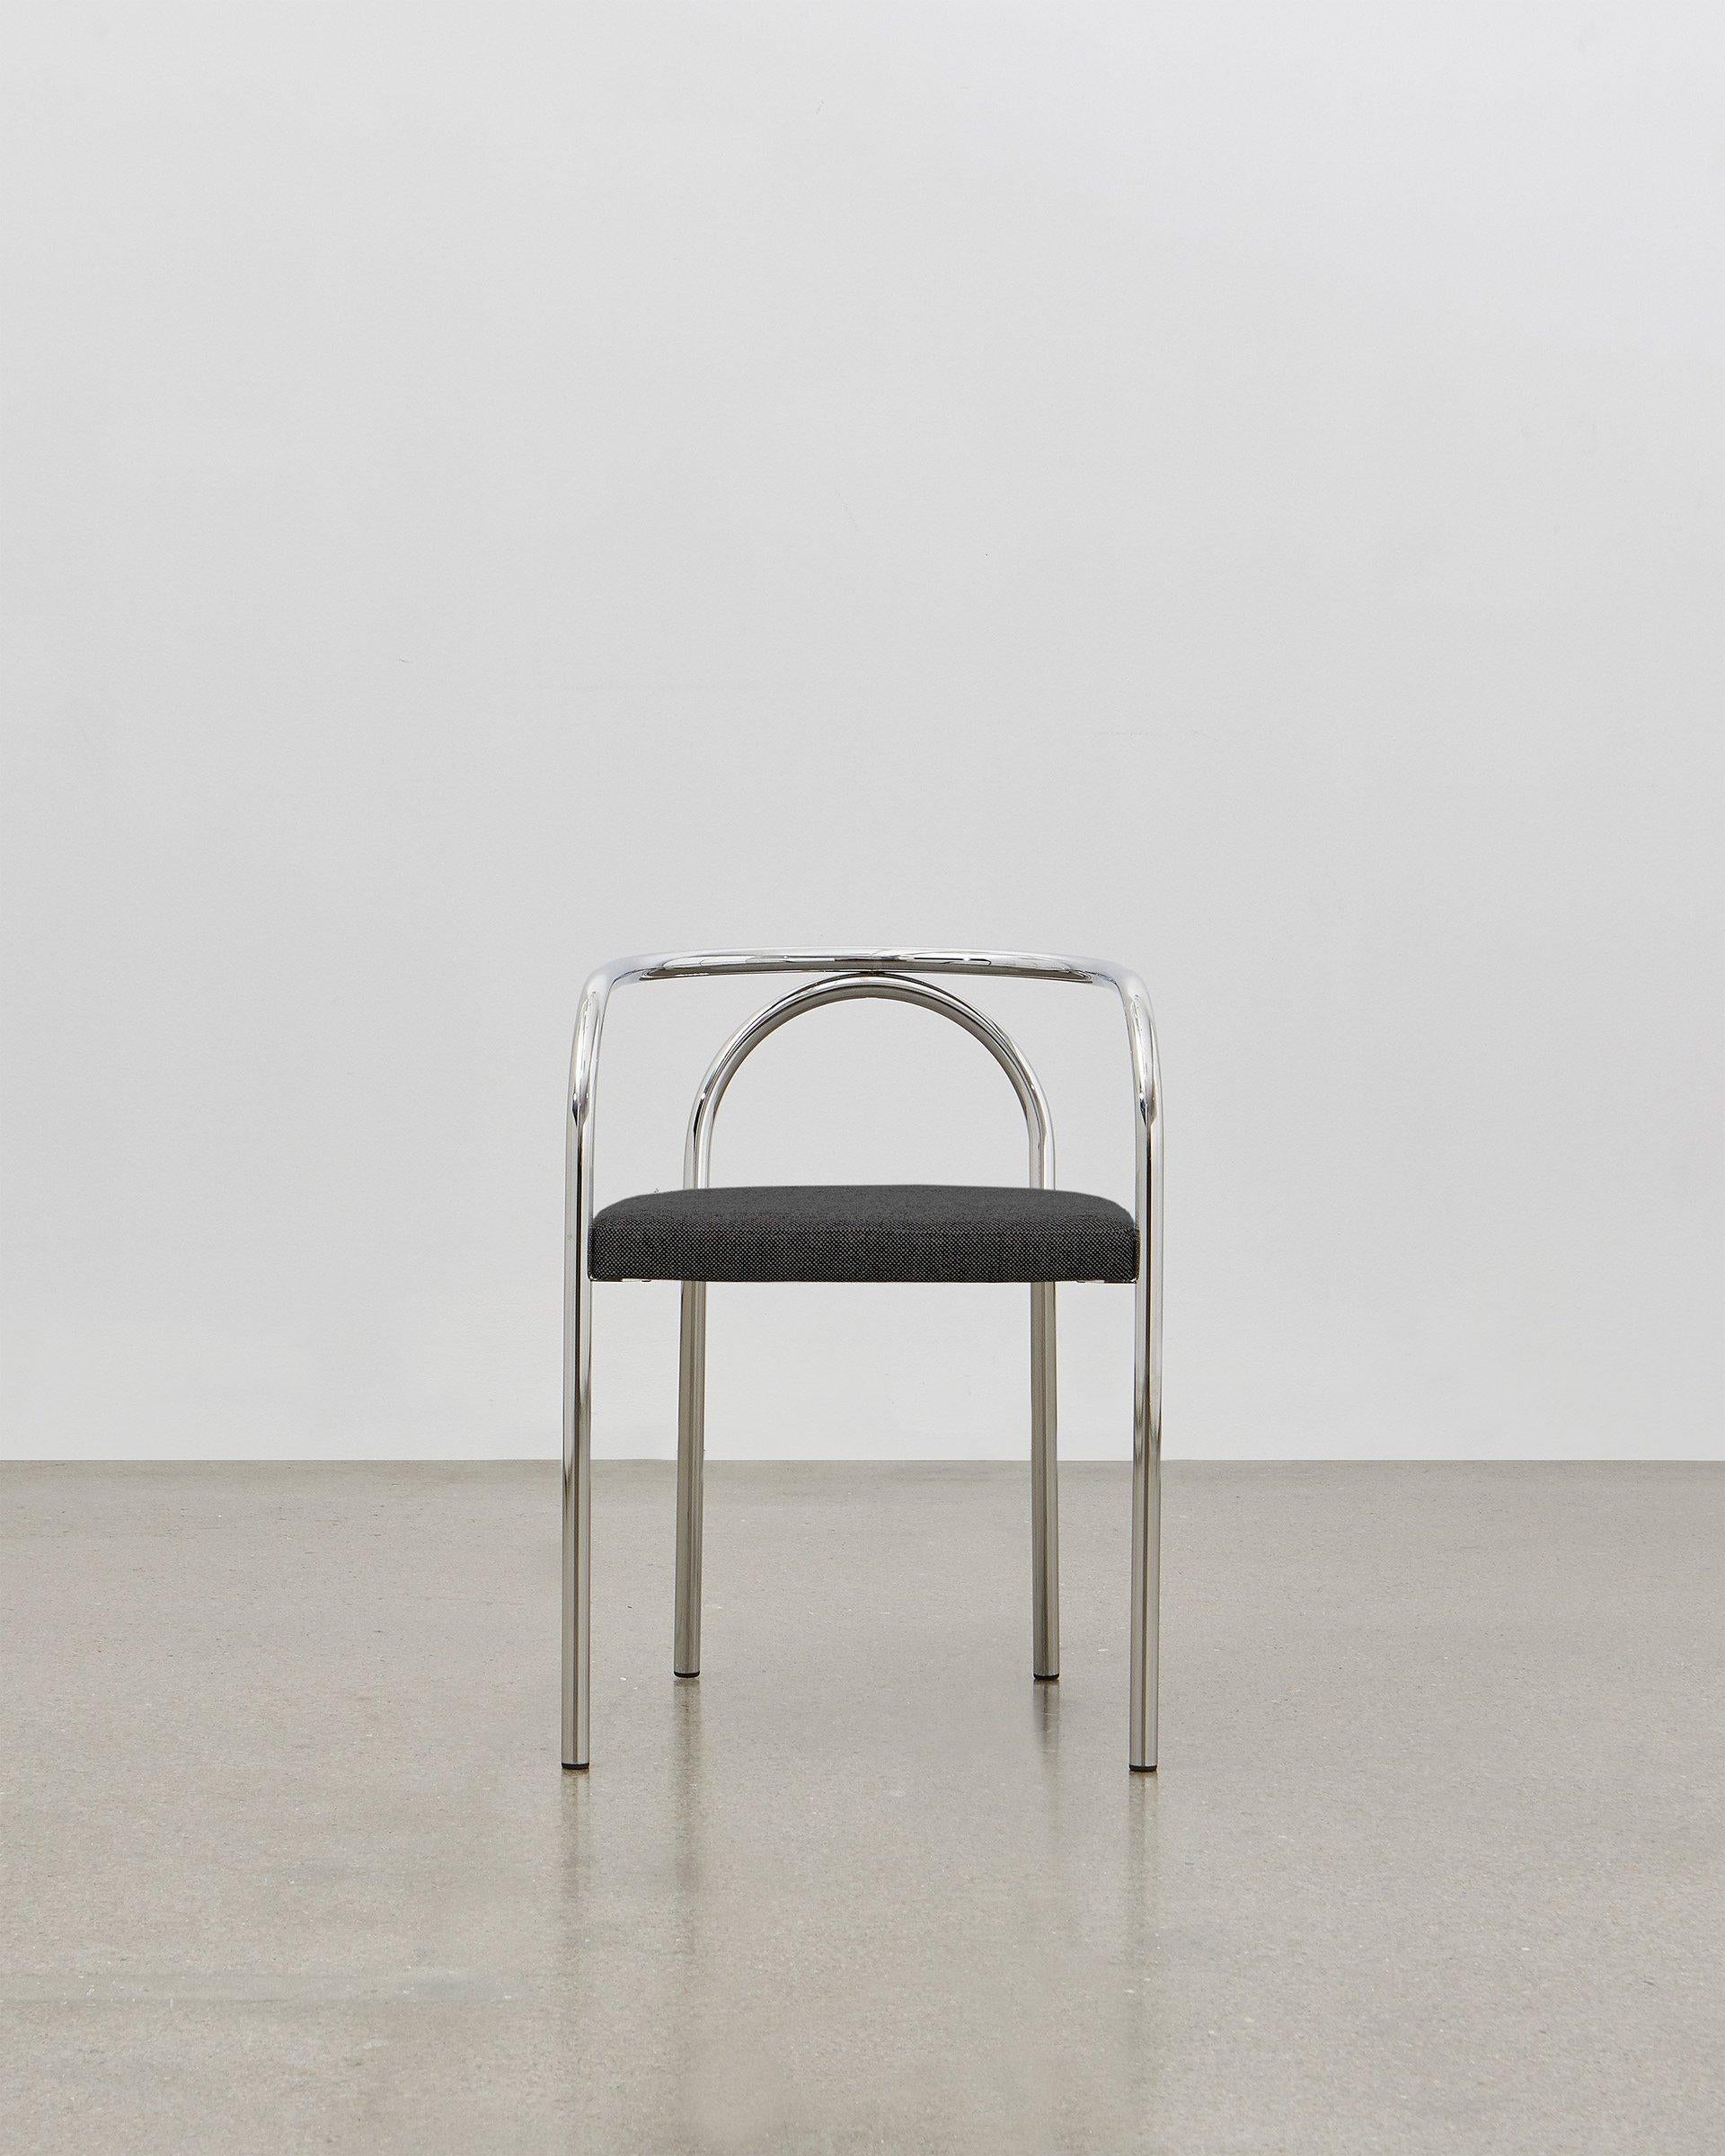 En créant la PH Chair, Poul Henningsen a cherché à réinventer un certain nombre de meubles classiques traditionnellement construits en bois, comme la chaise 